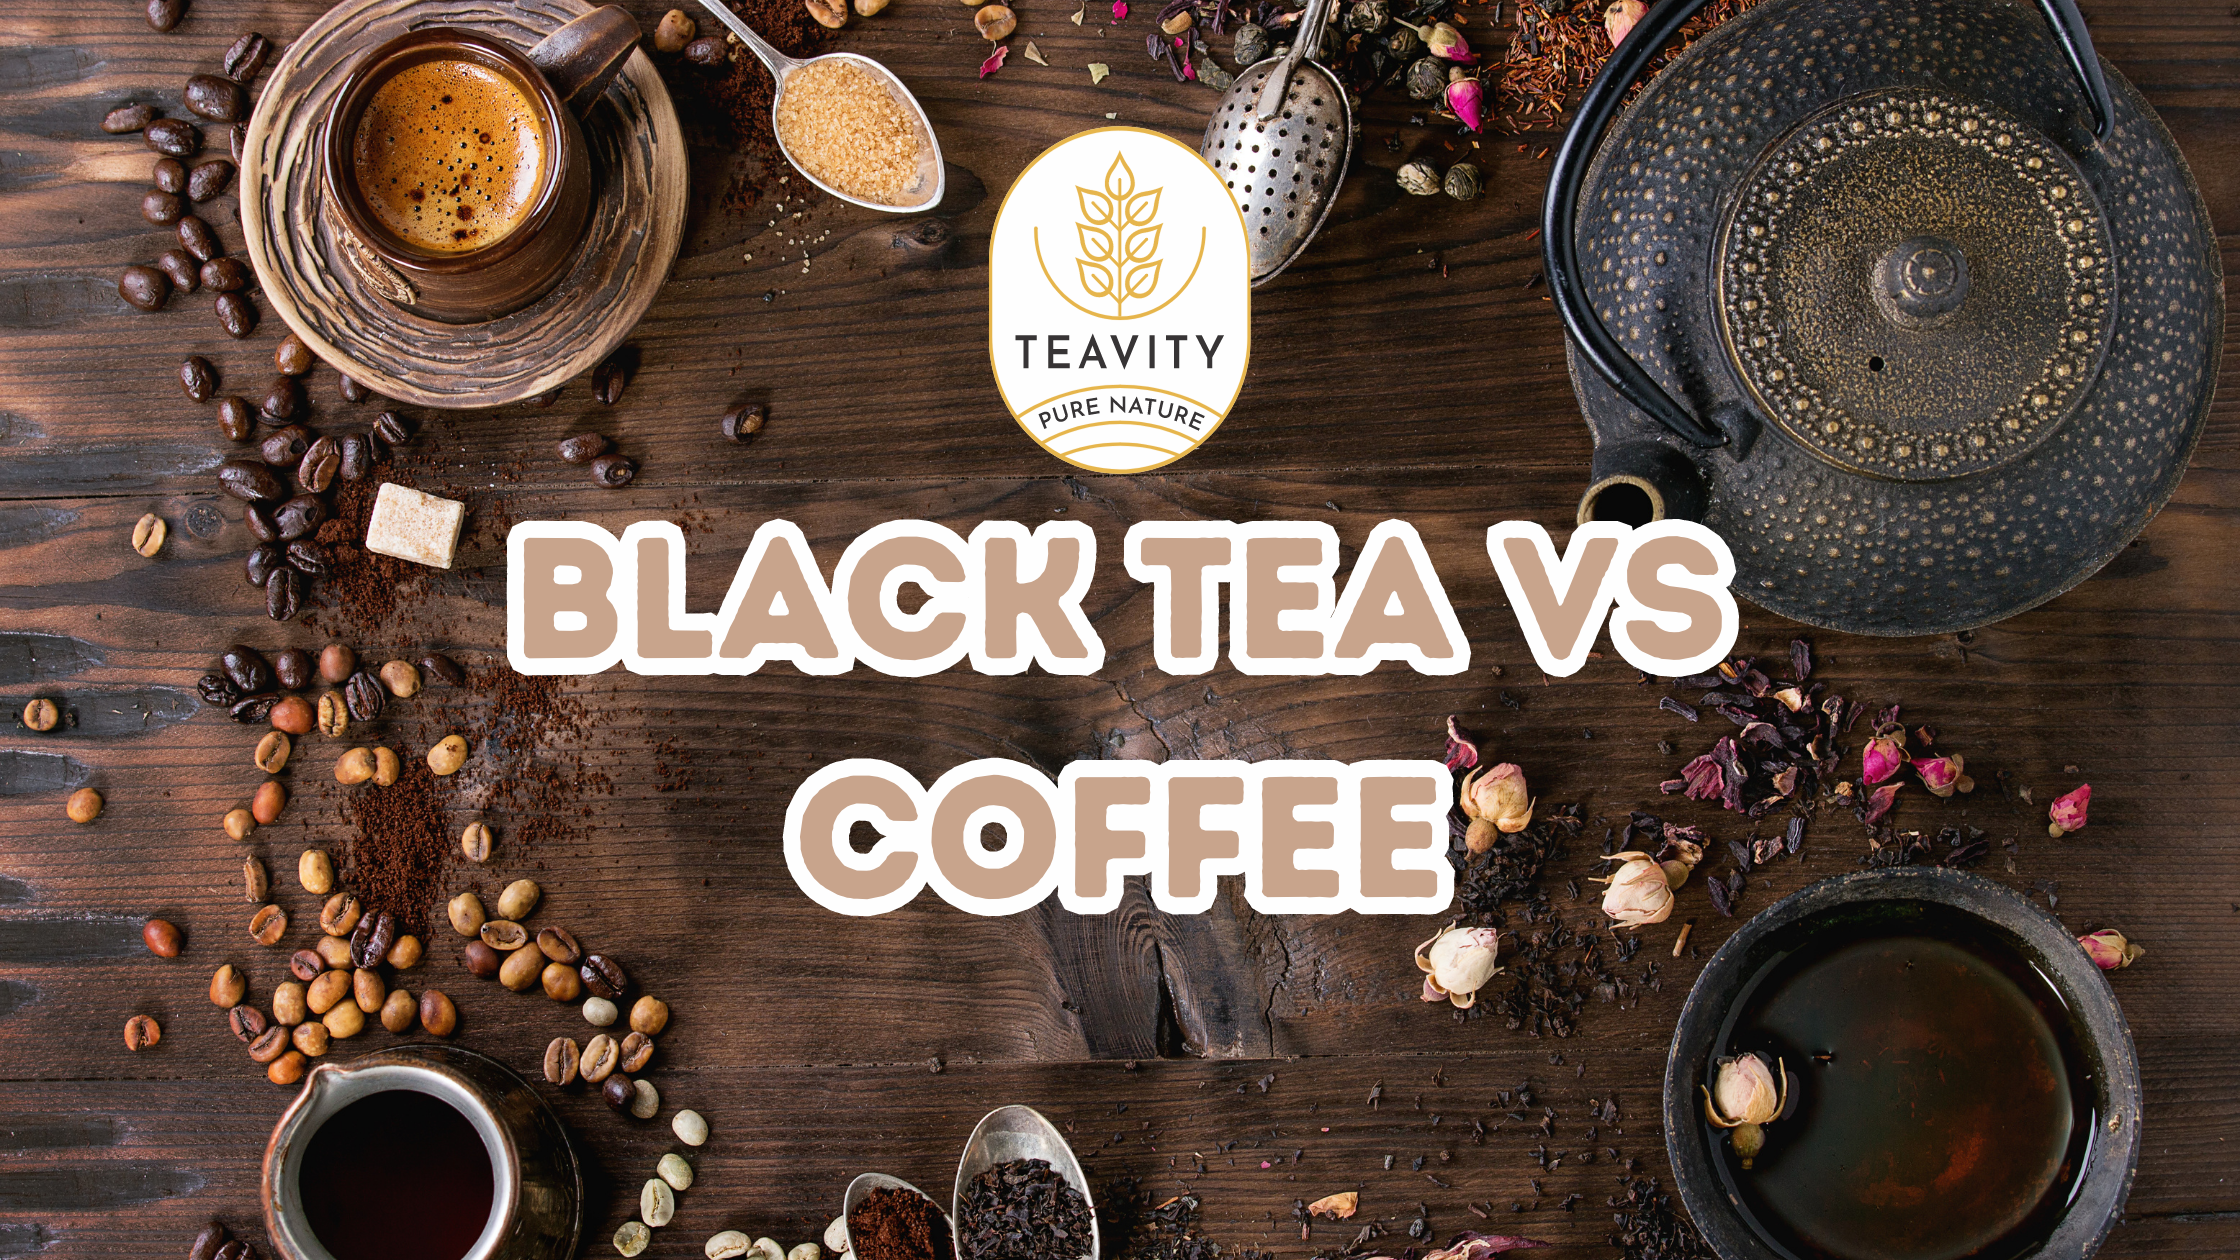 Black Tea vs. Coffee